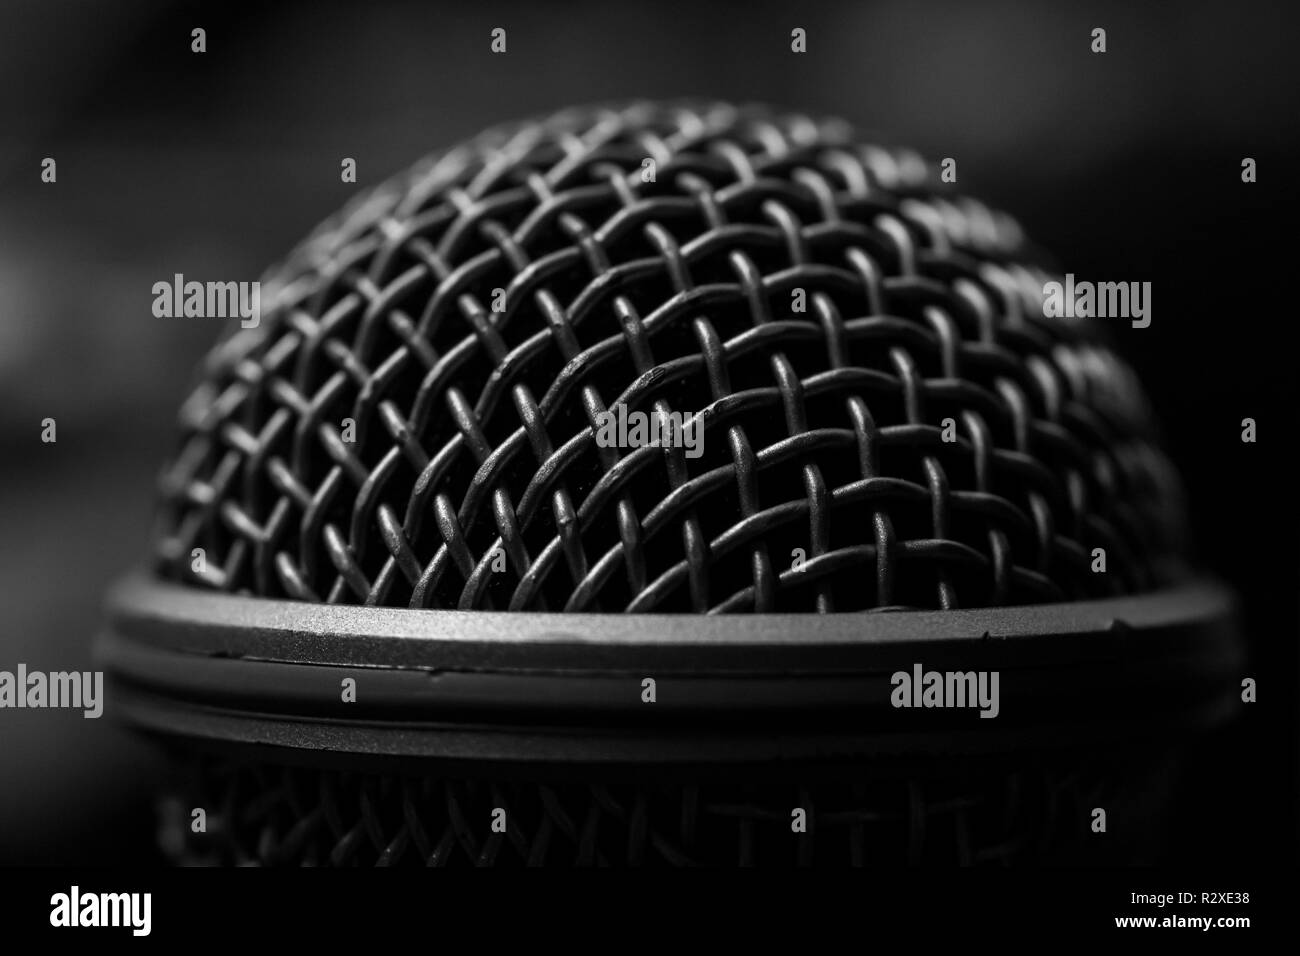 Microphone audio professionnelle monochrome auvent selective focus Banque D'Images